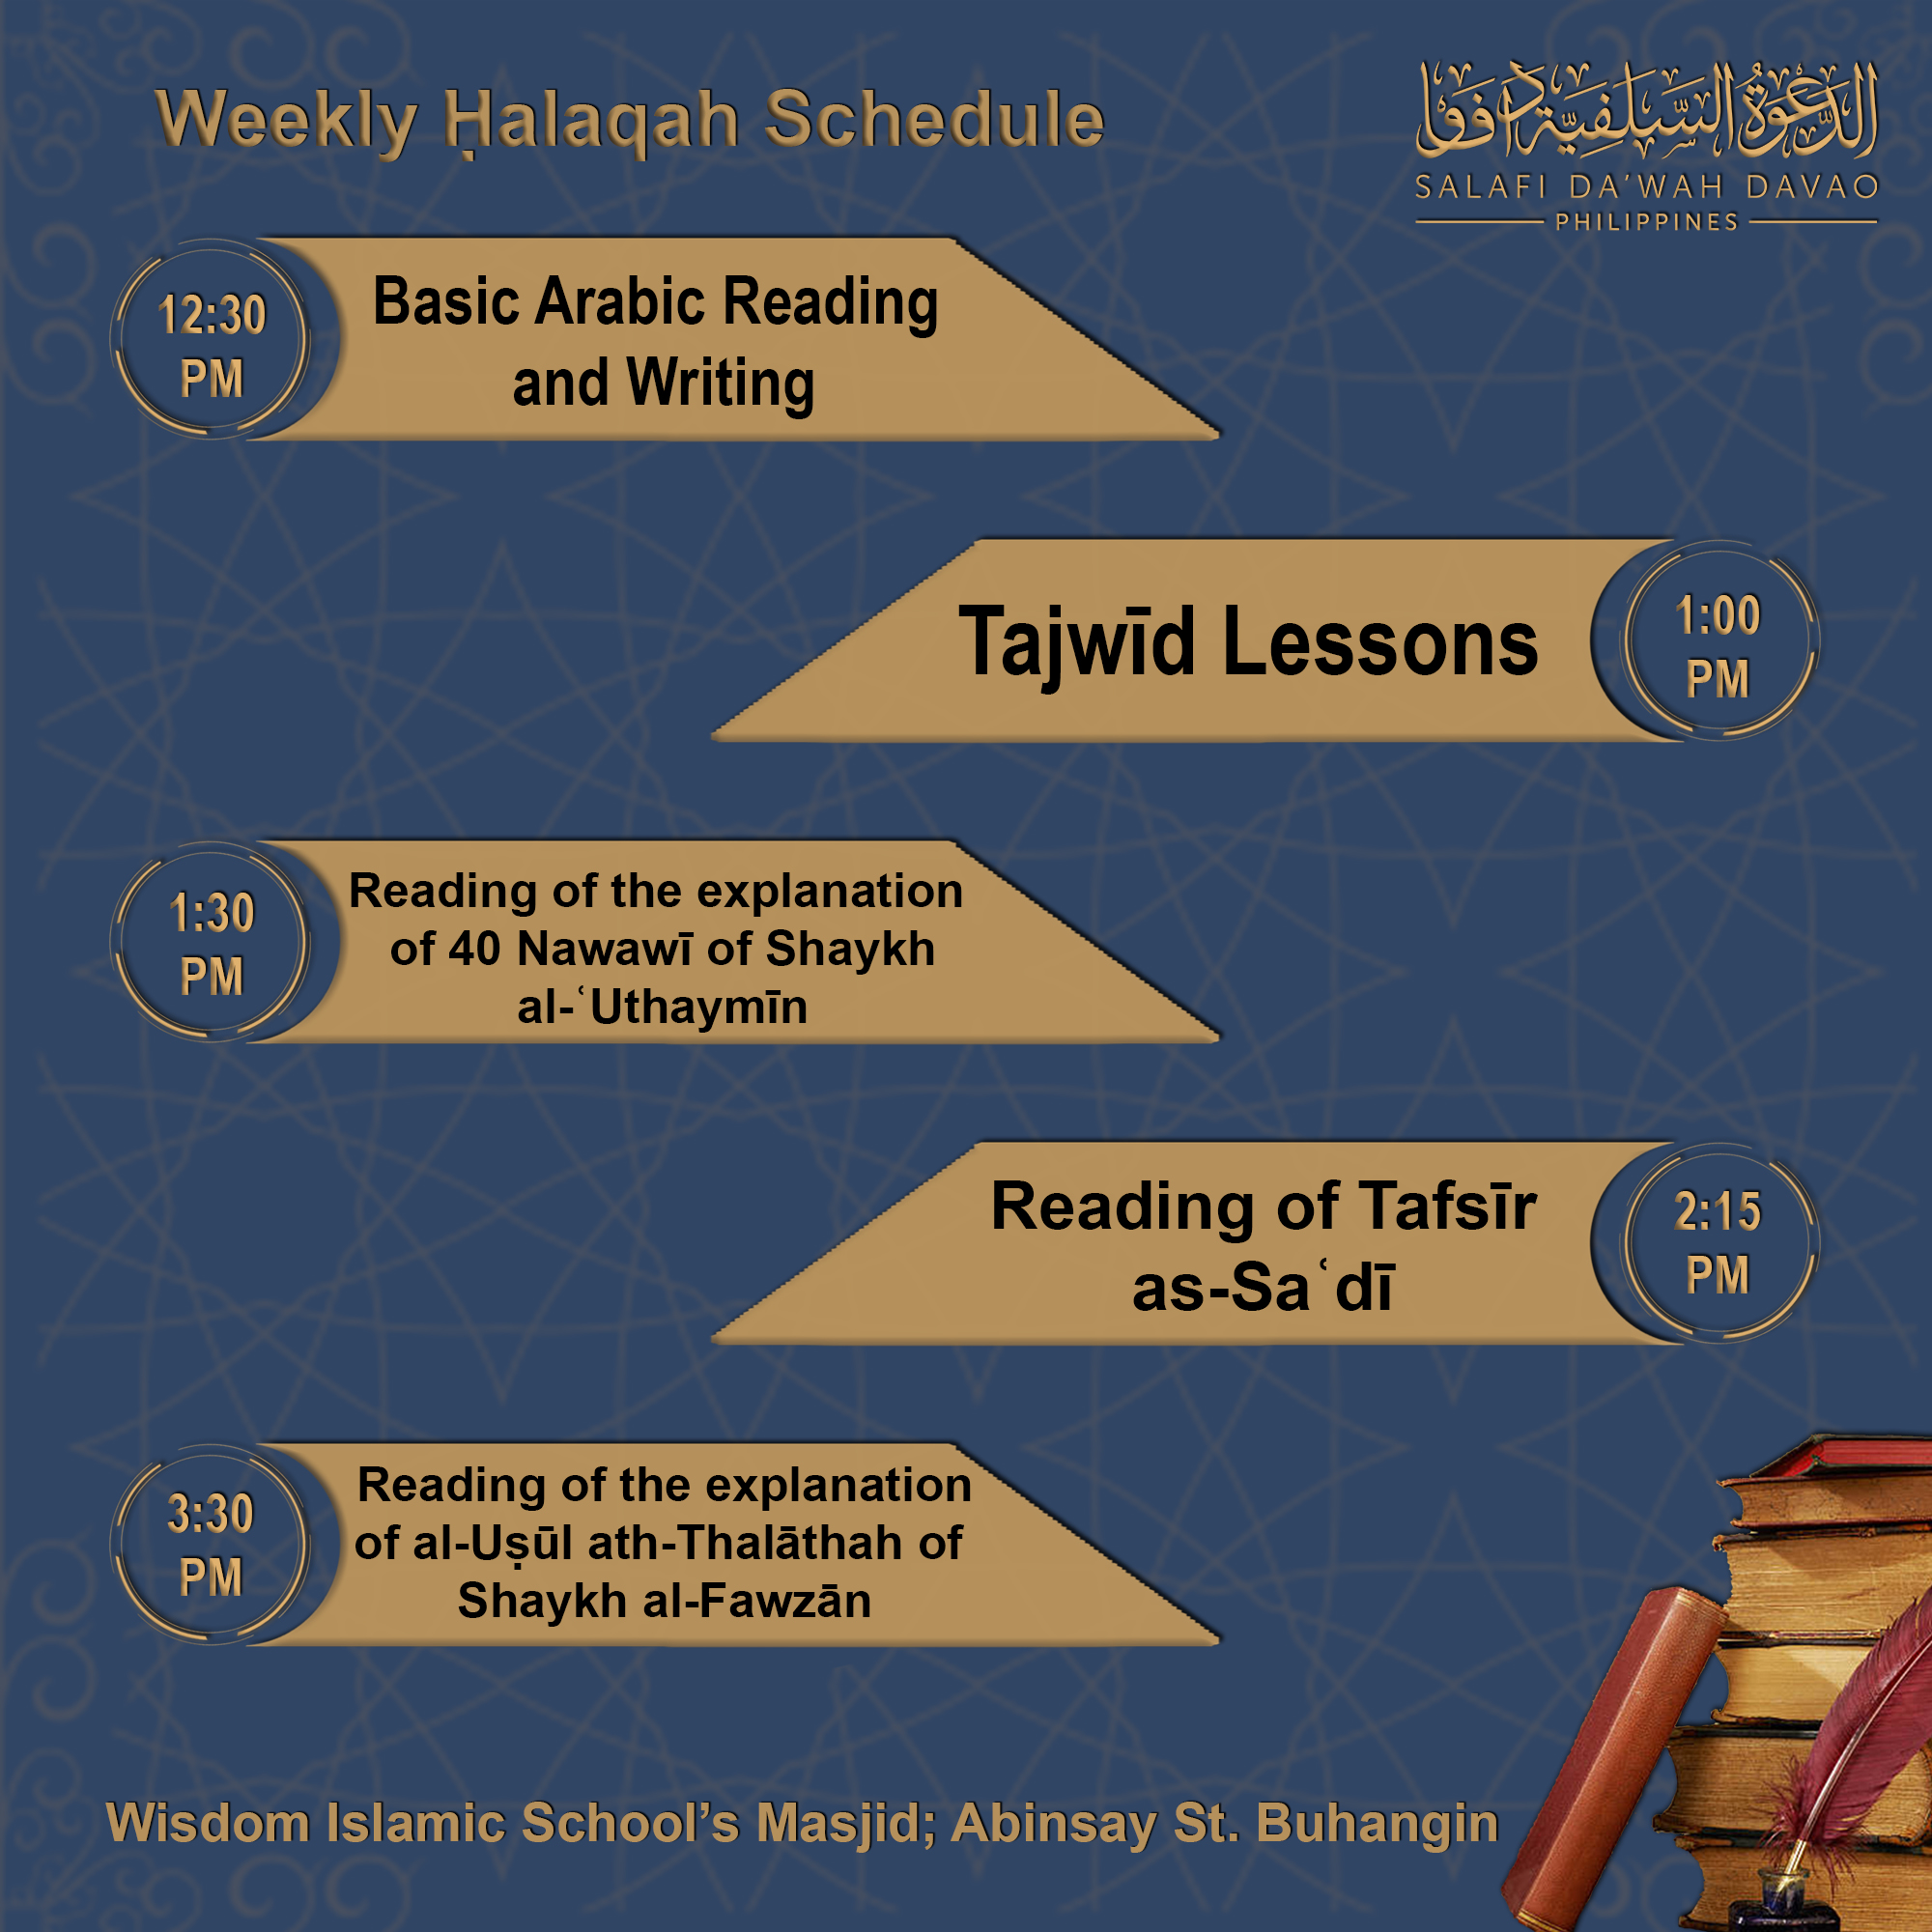 Weekly Halaqah